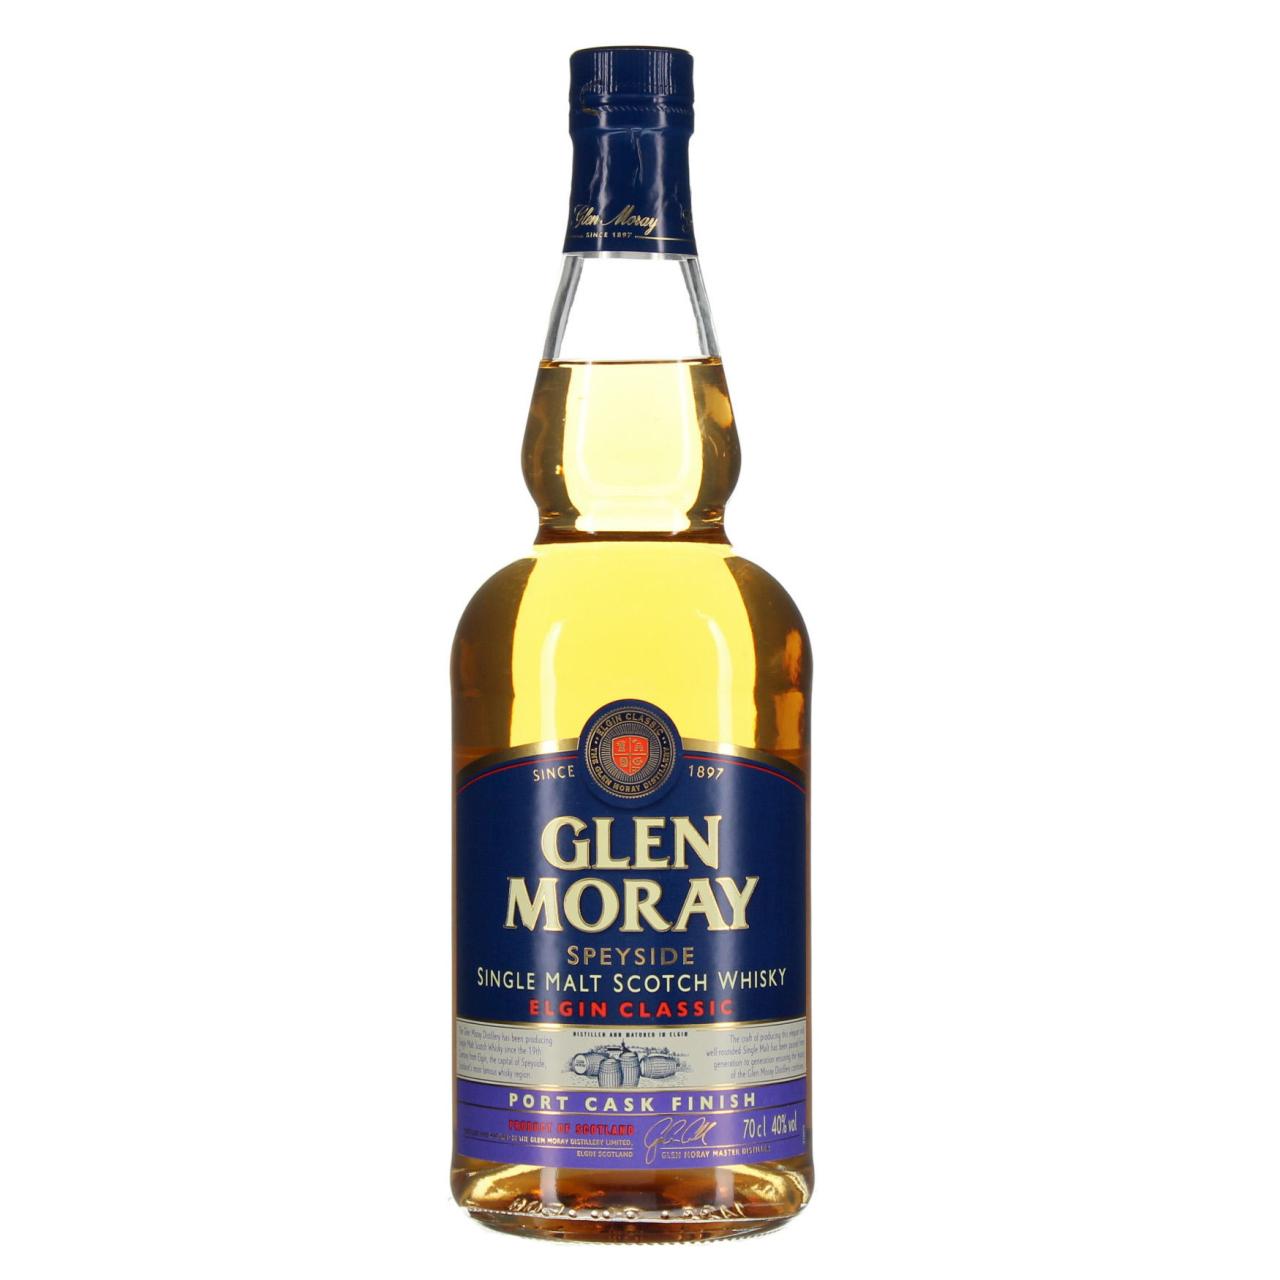 Glen Moray Whisky Port Cask Finish 40% 0,7l